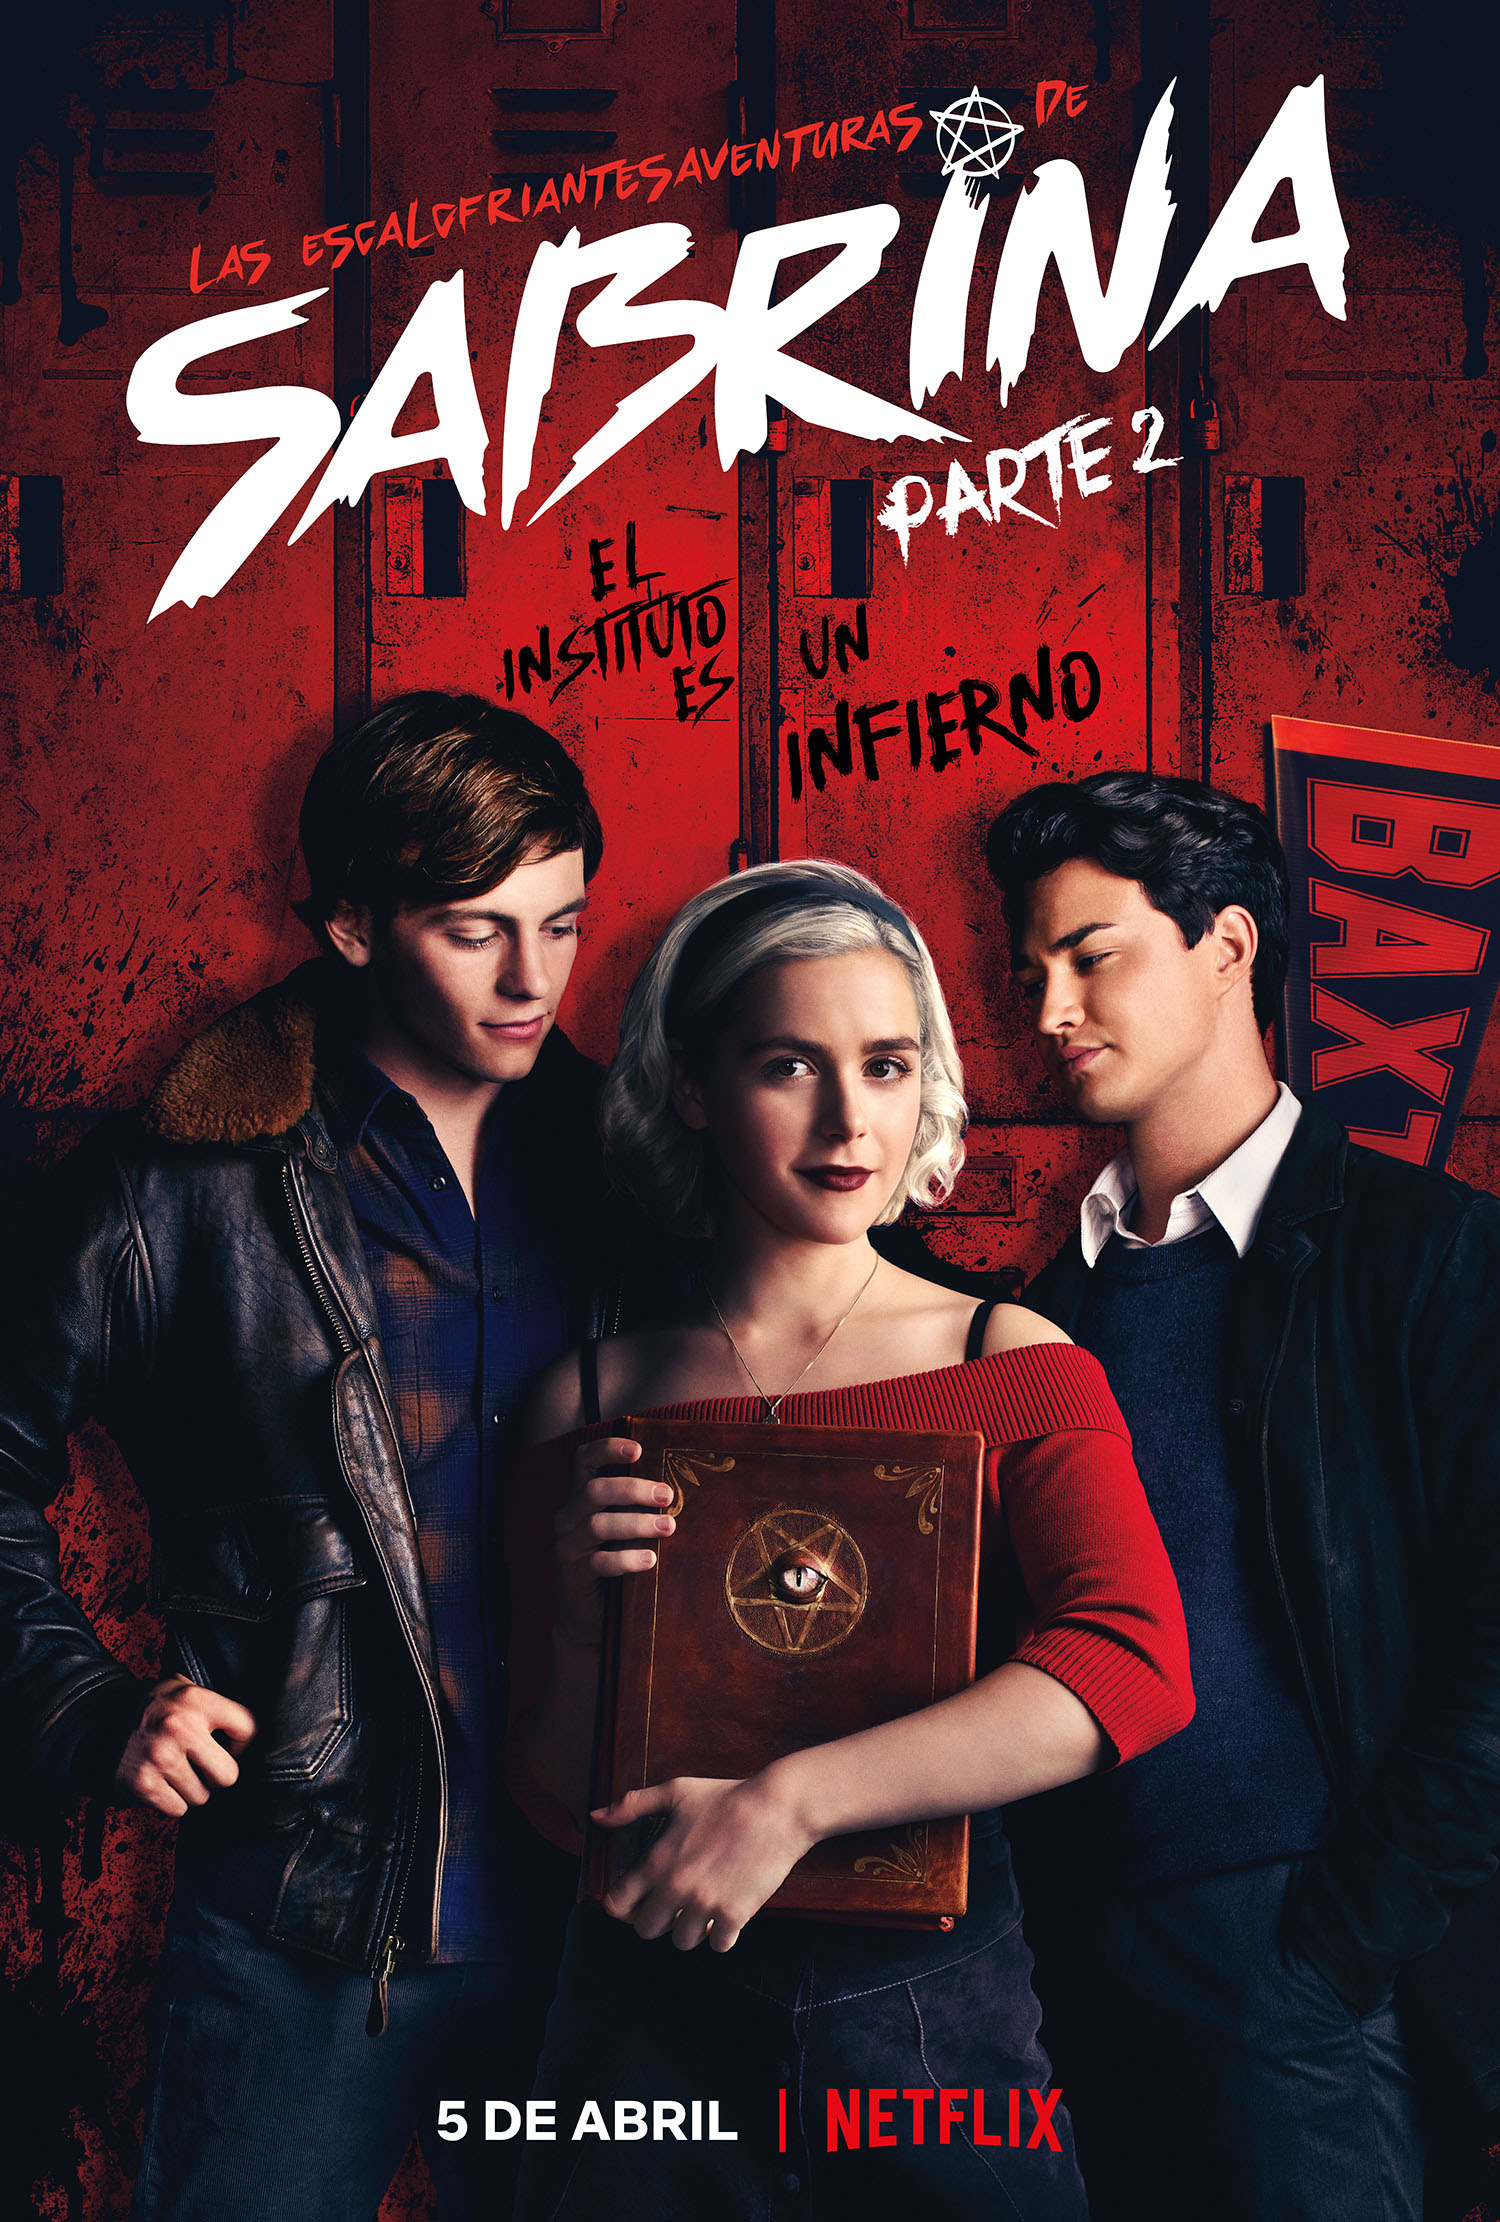 La magia vuelve a Netflix el 5 de abril gracias a Sabrina